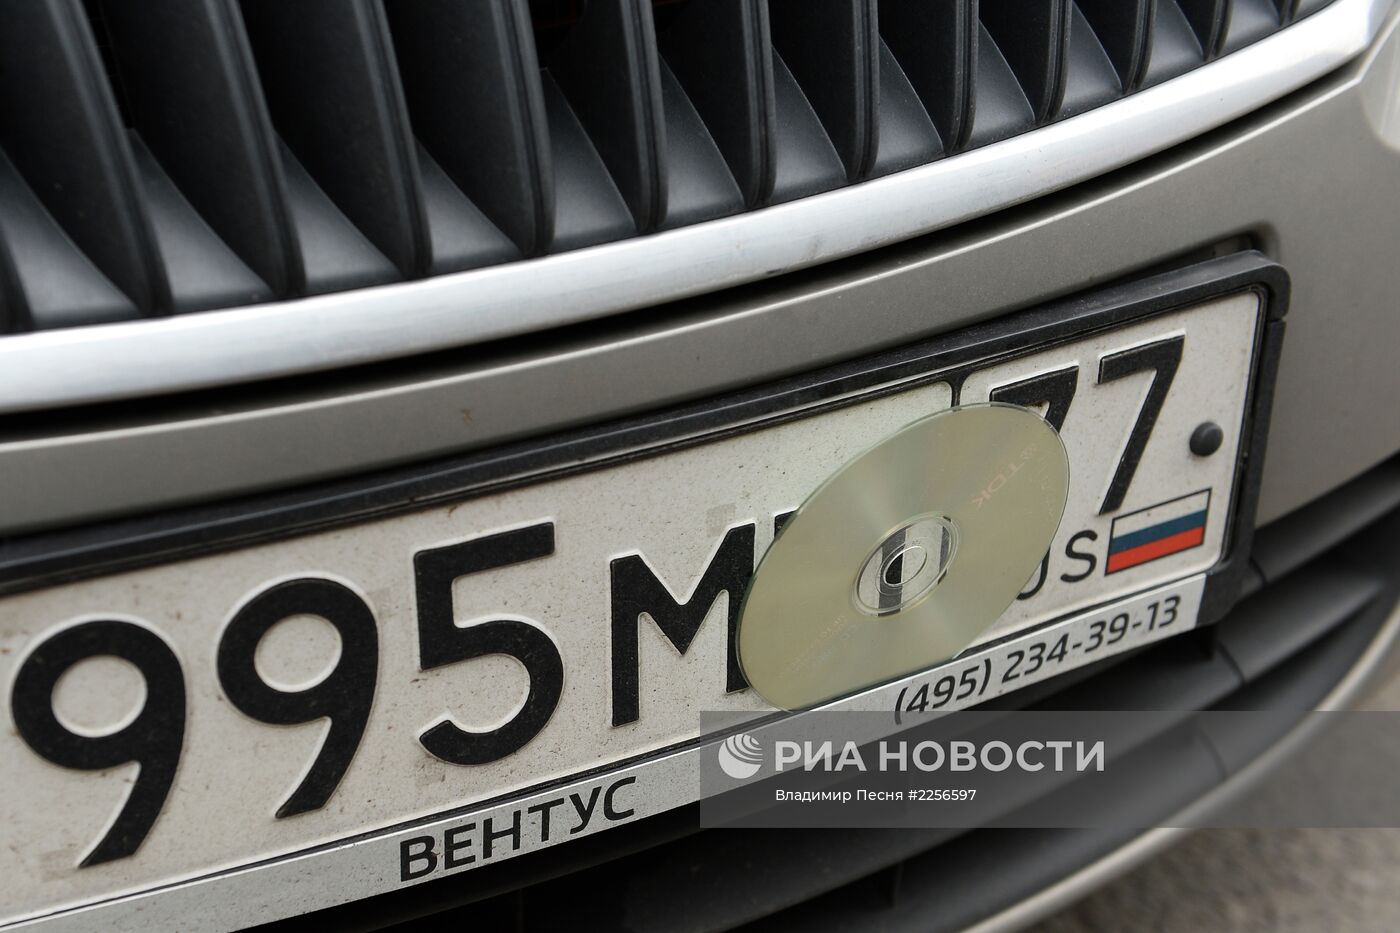 Скрытые номера на припаркованных автомобилях в Москве